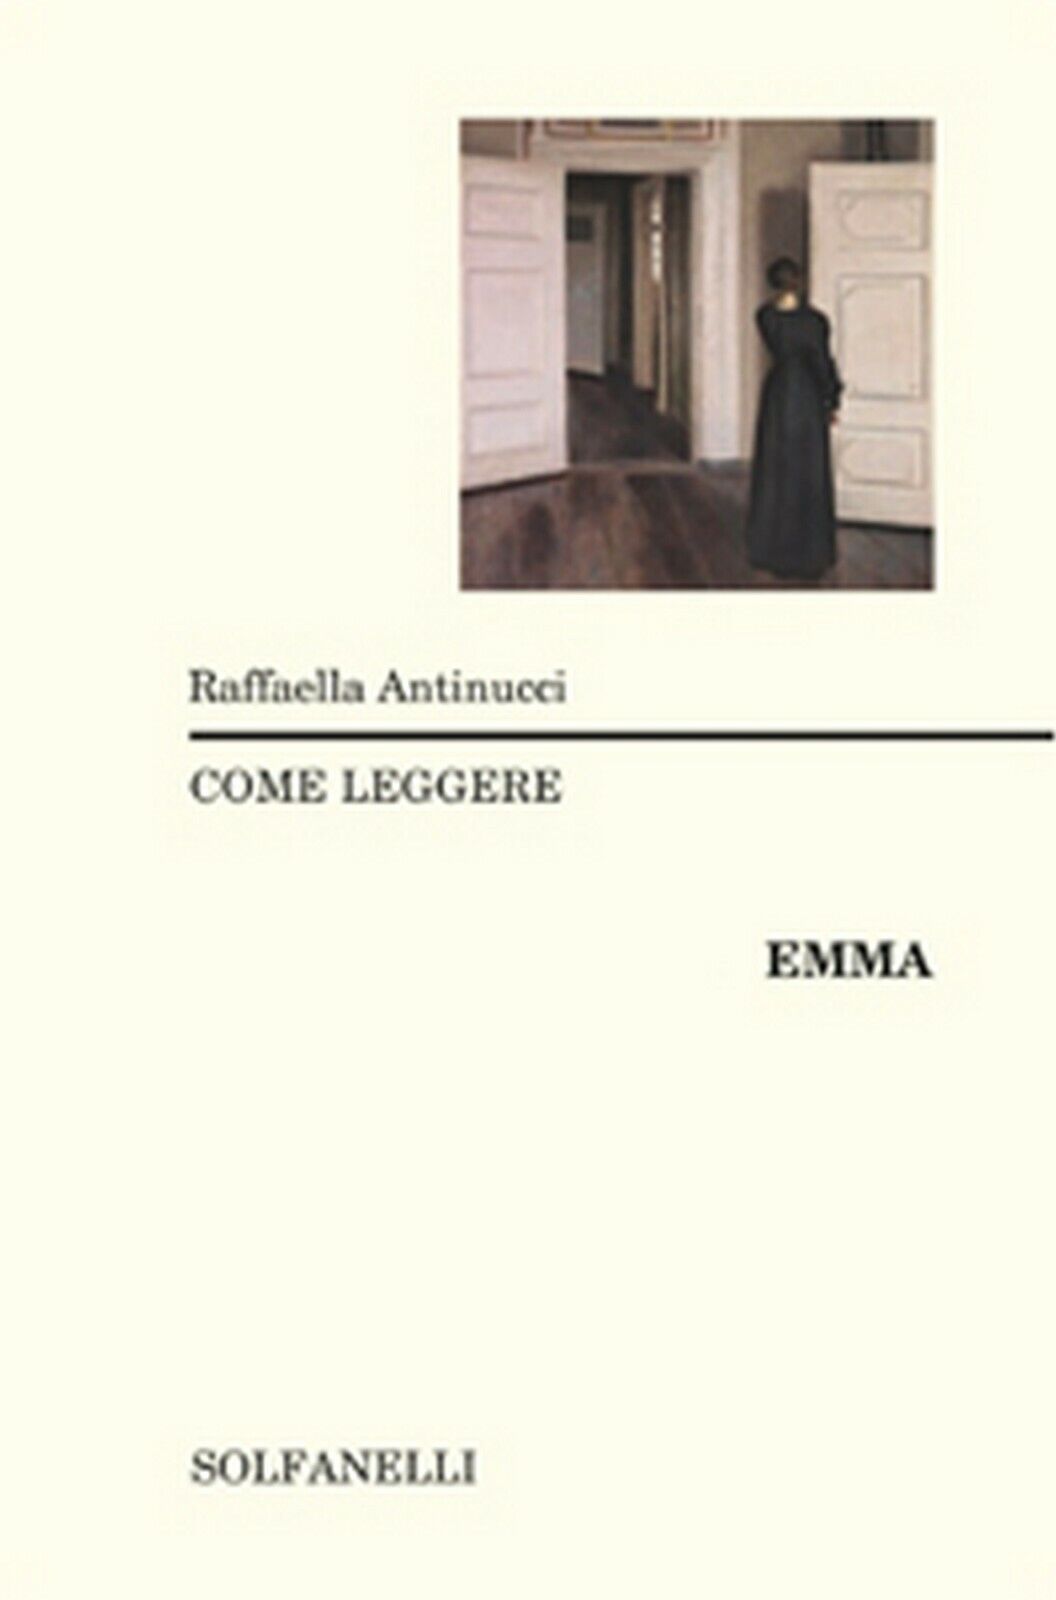 COME LEGGERE EMMA  di Raffaella Antinucci,  Solfanelli Edizioni